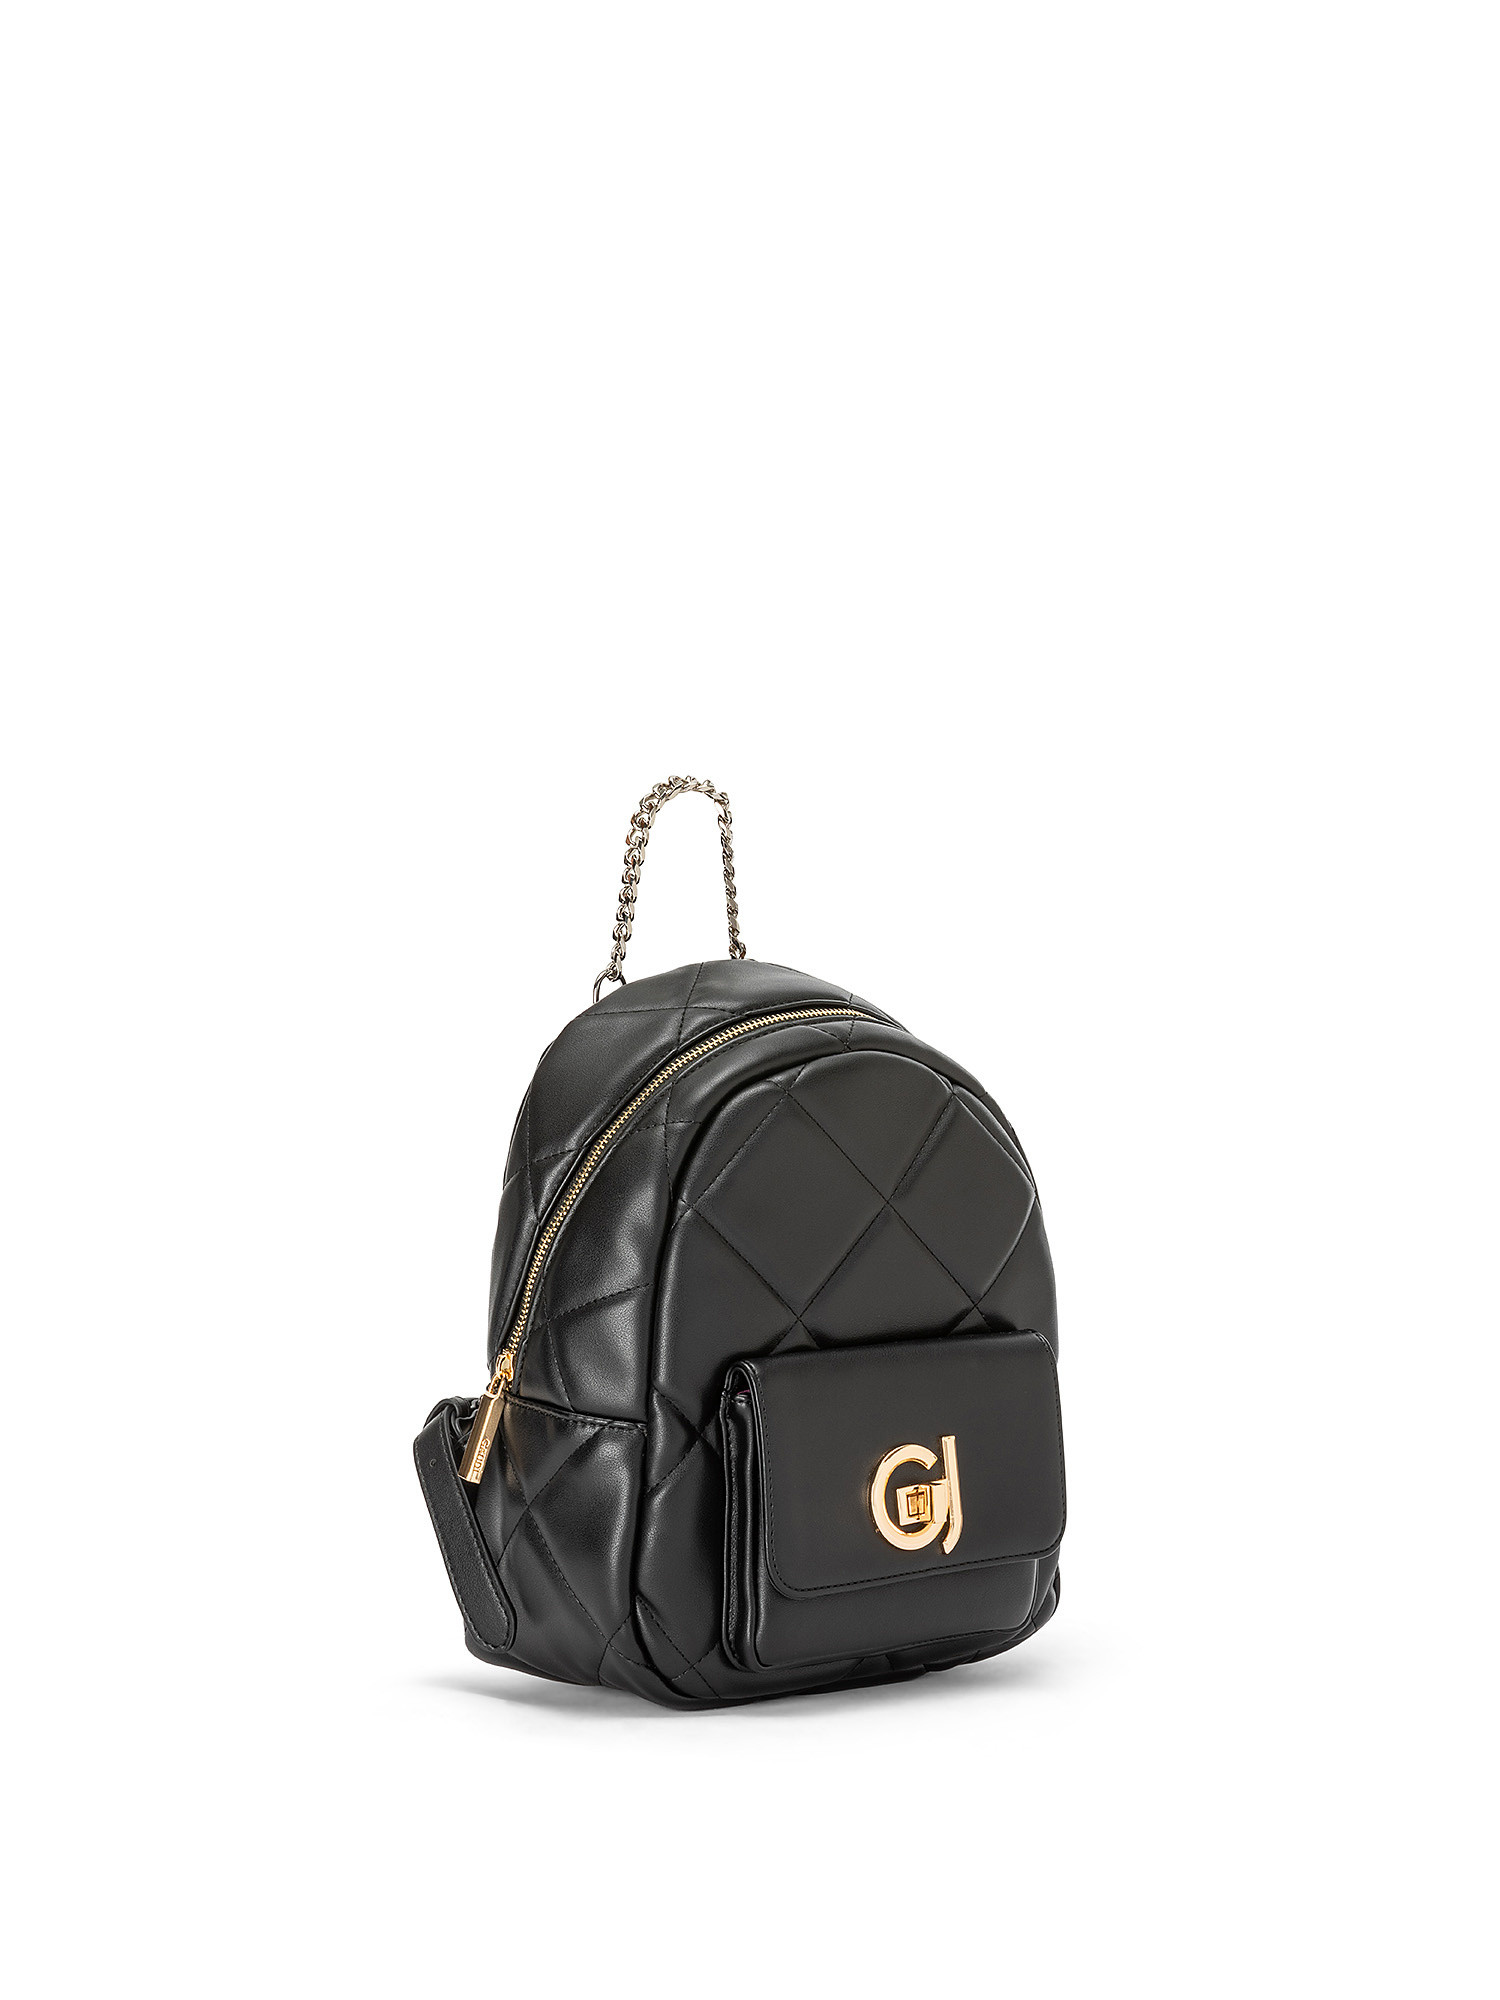 Gaudì - Moon backpack, Black, large image number 1